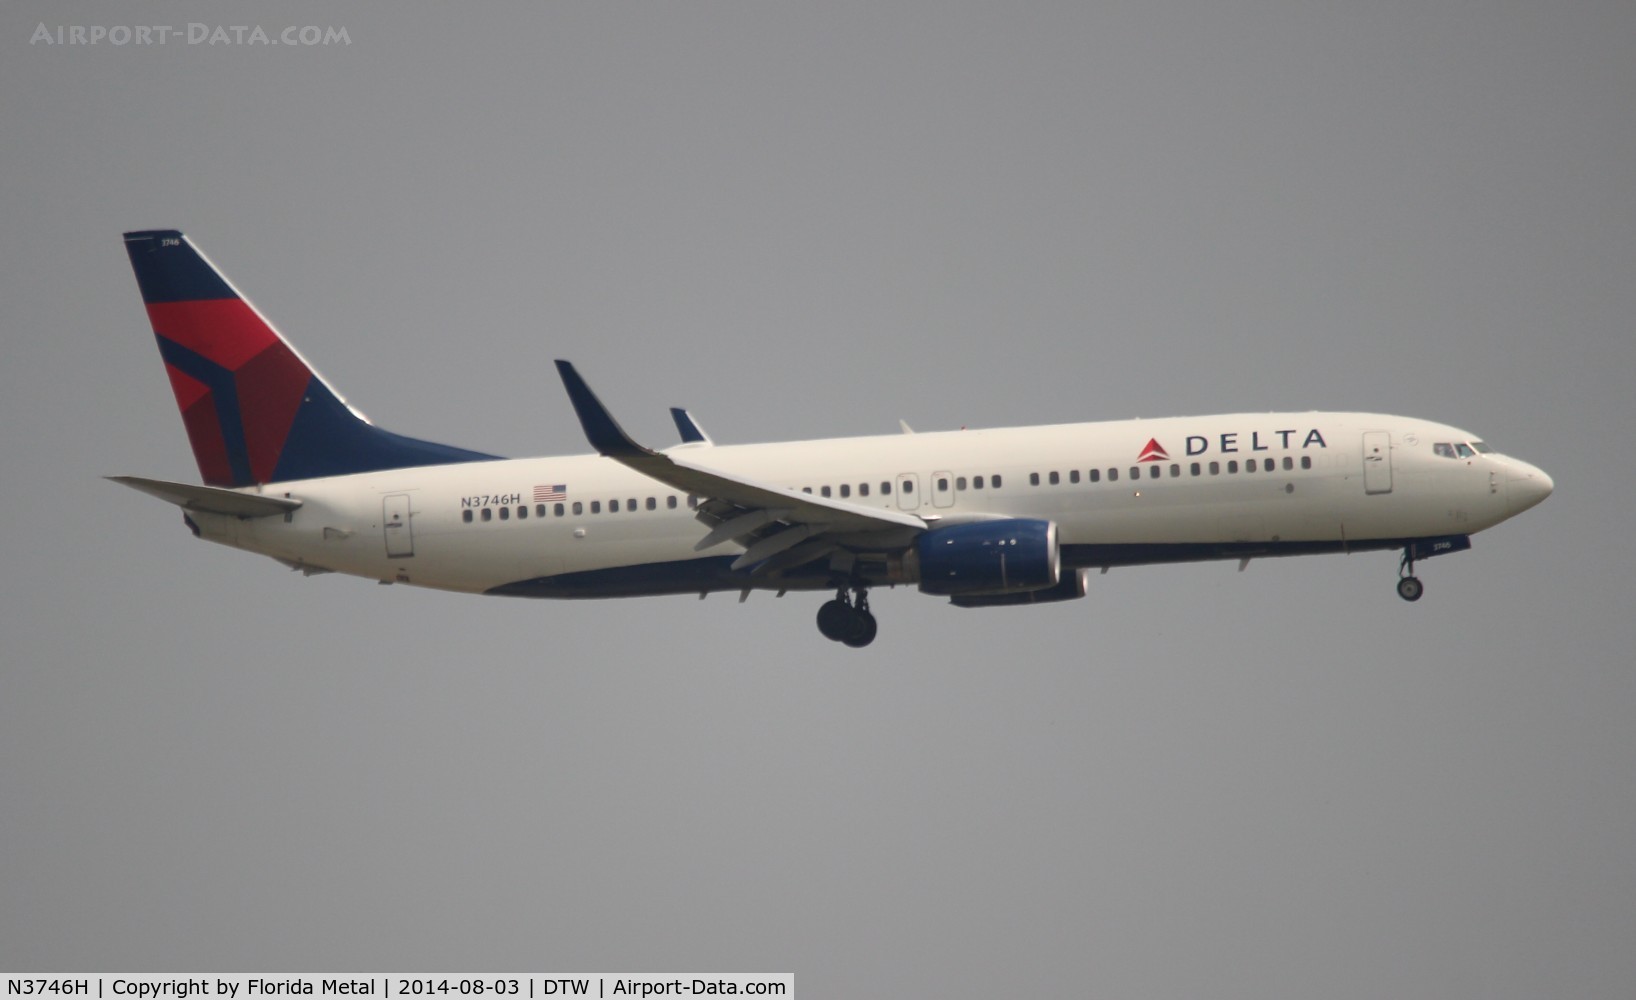 N3746H, 2001 Boeing 737-832 C/N 30488, Delta